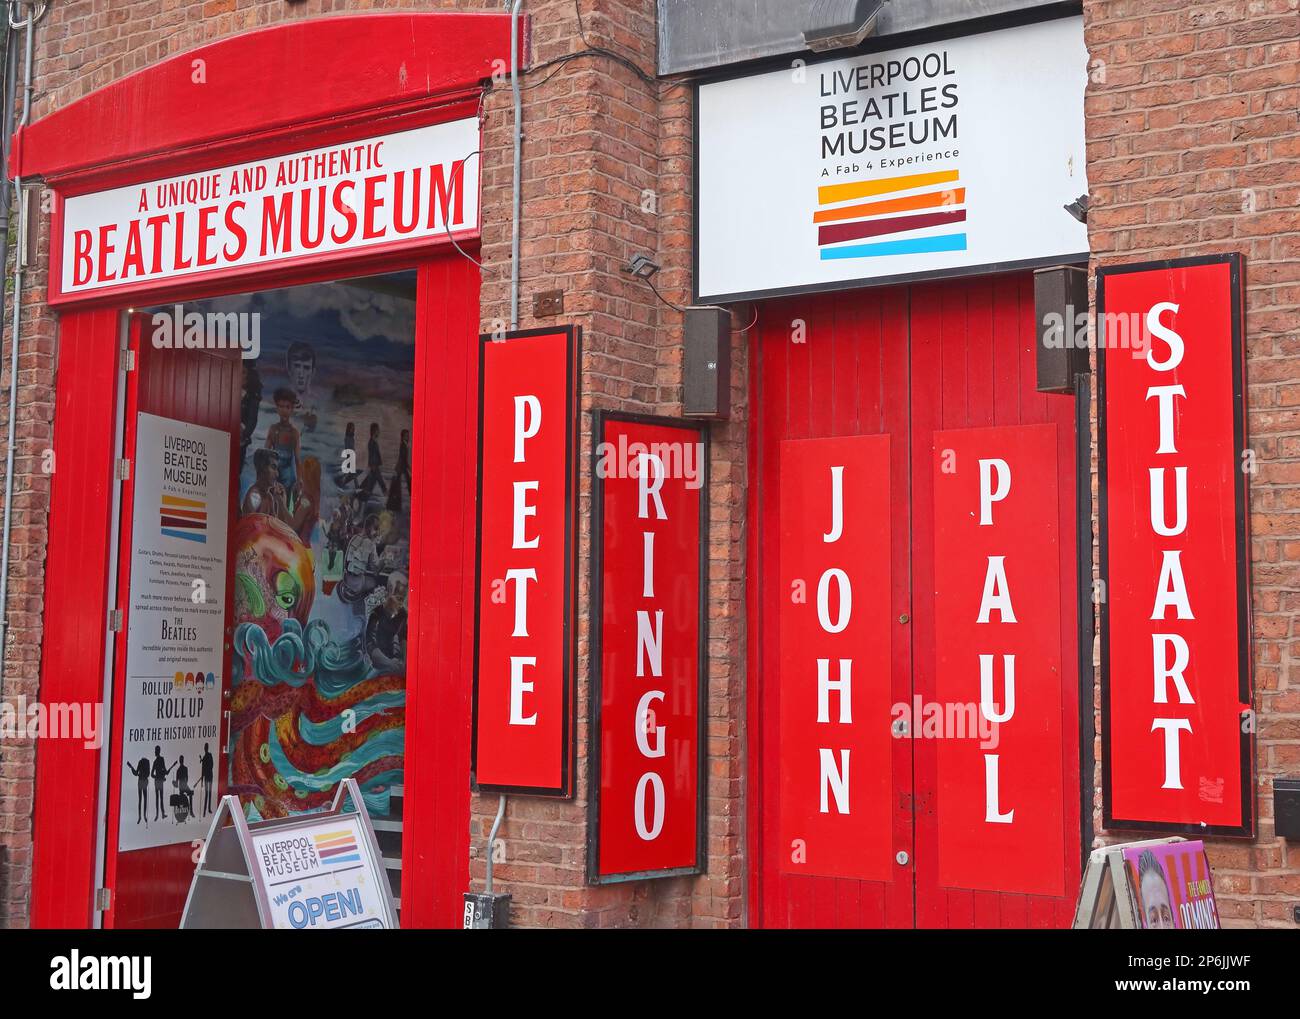 Un musée des Beatles unique et authentique, souvenirs du musée des Beatles de Liverpool, Mathew Street, Liverpool, Angleterre, Royaume-Uni, L2 6RE Banque D'Images